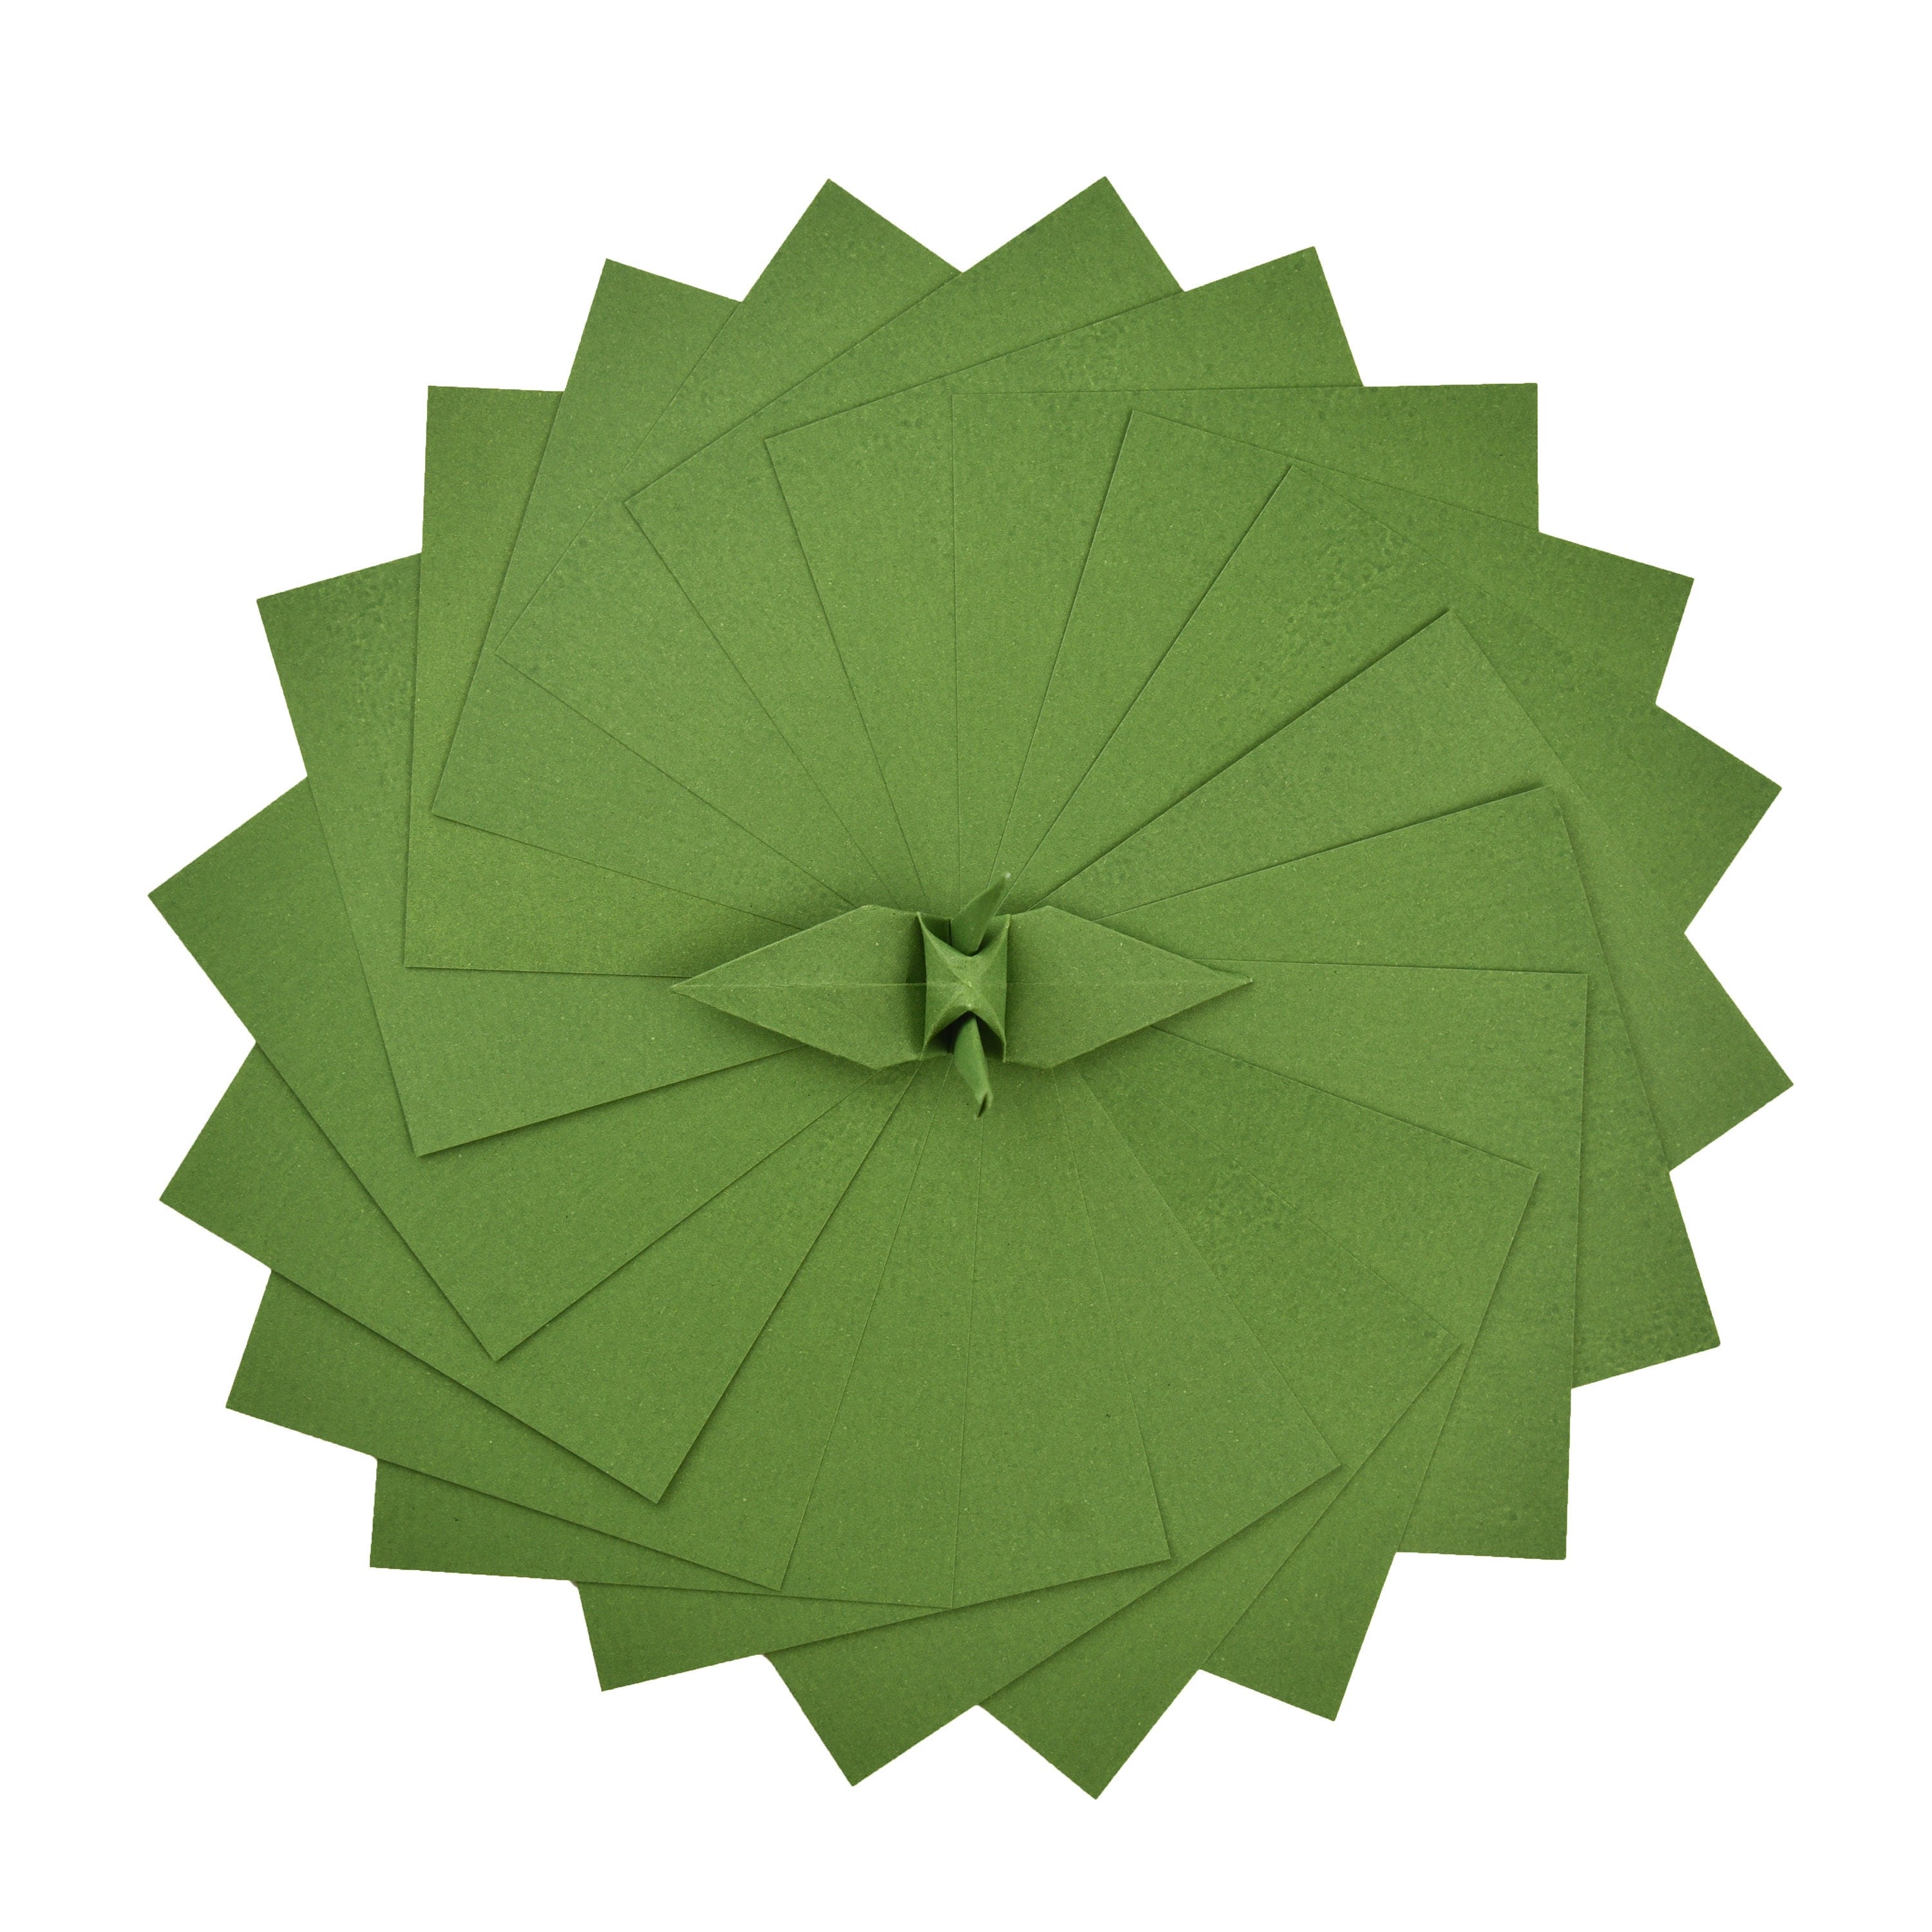 100 Hojas de Papel Origami - 6x6 pulgadas - Paquete de Papel Cuadrado para Plegar, Grullas de Origami y Decoración - S23